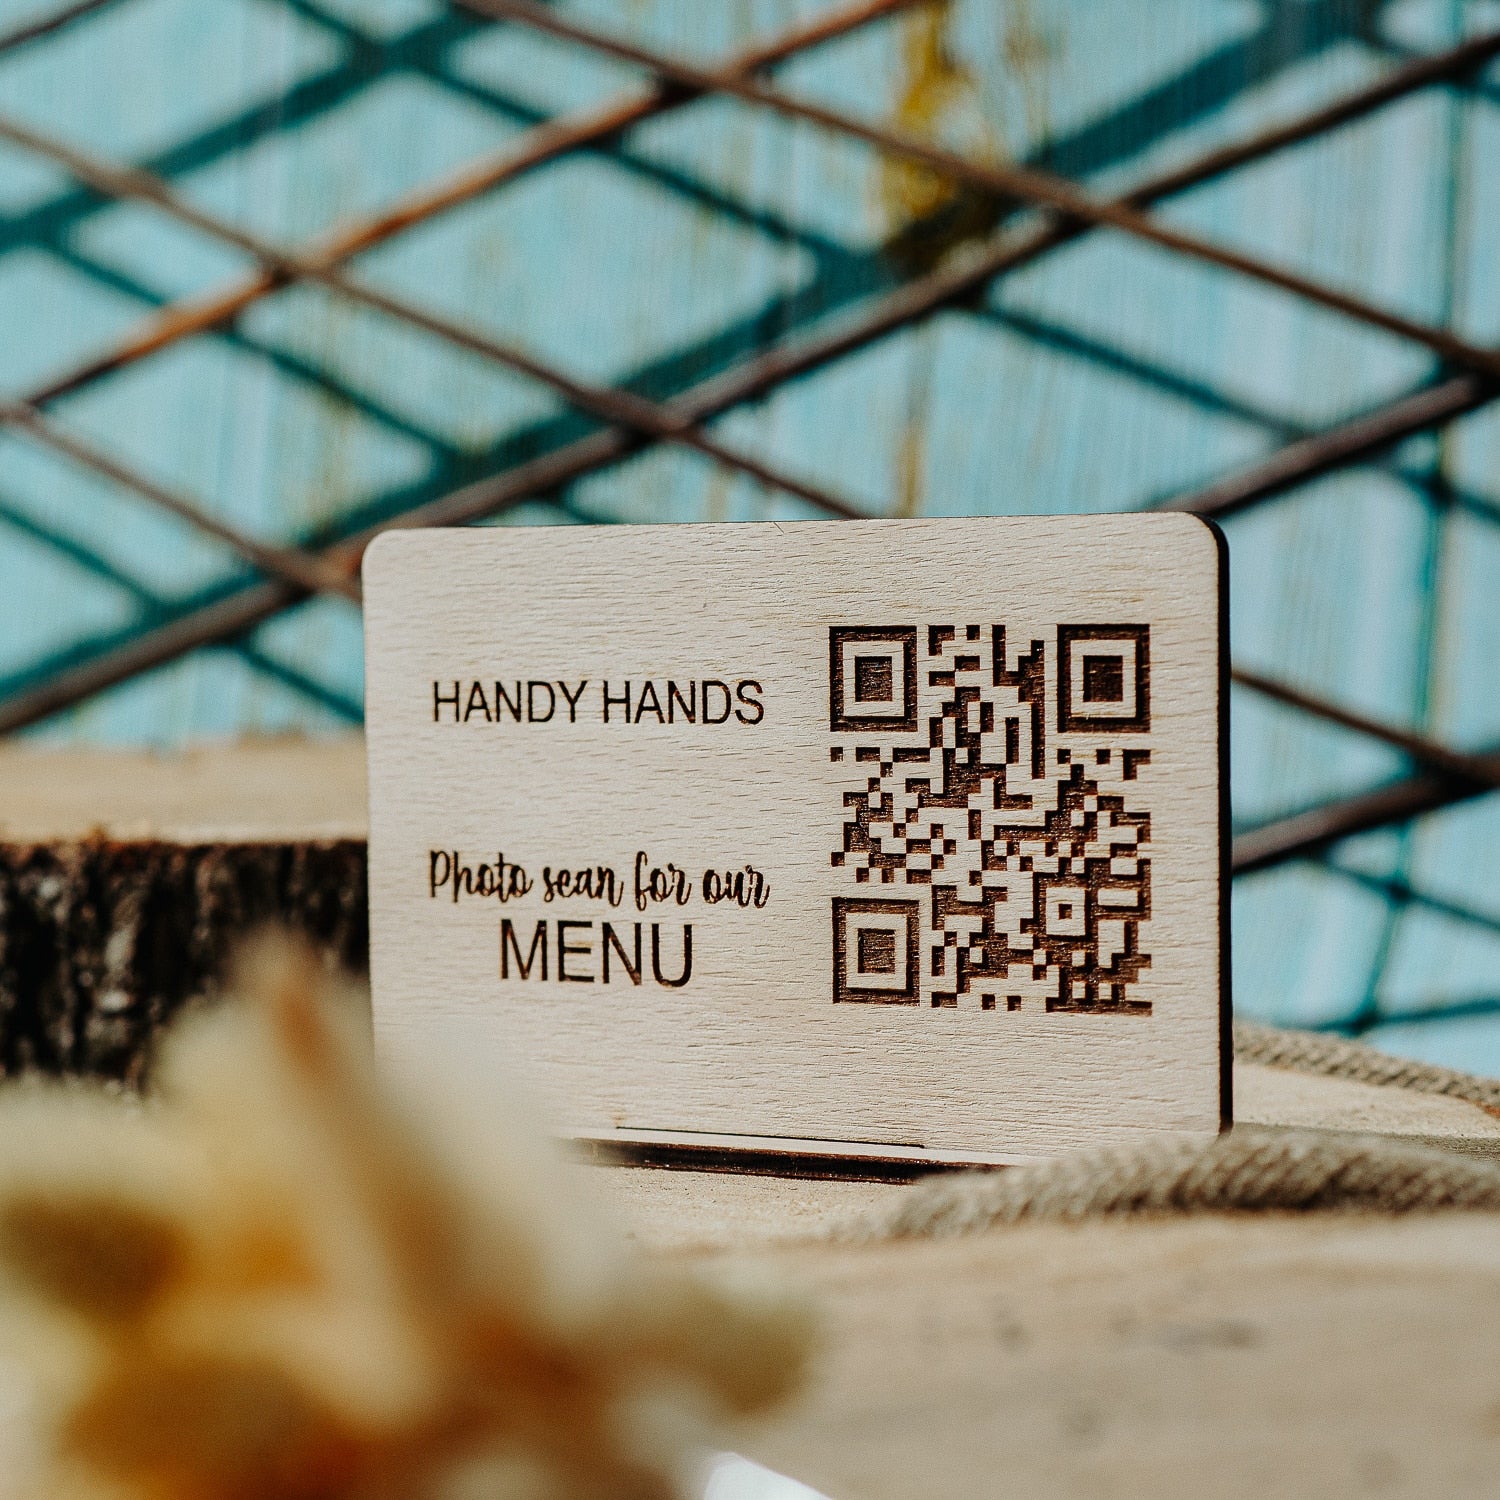 Meniu Digital din lemn HH979 cu QR Code Personalizat pentru Comanda in Restaurant 15x8.5 cm